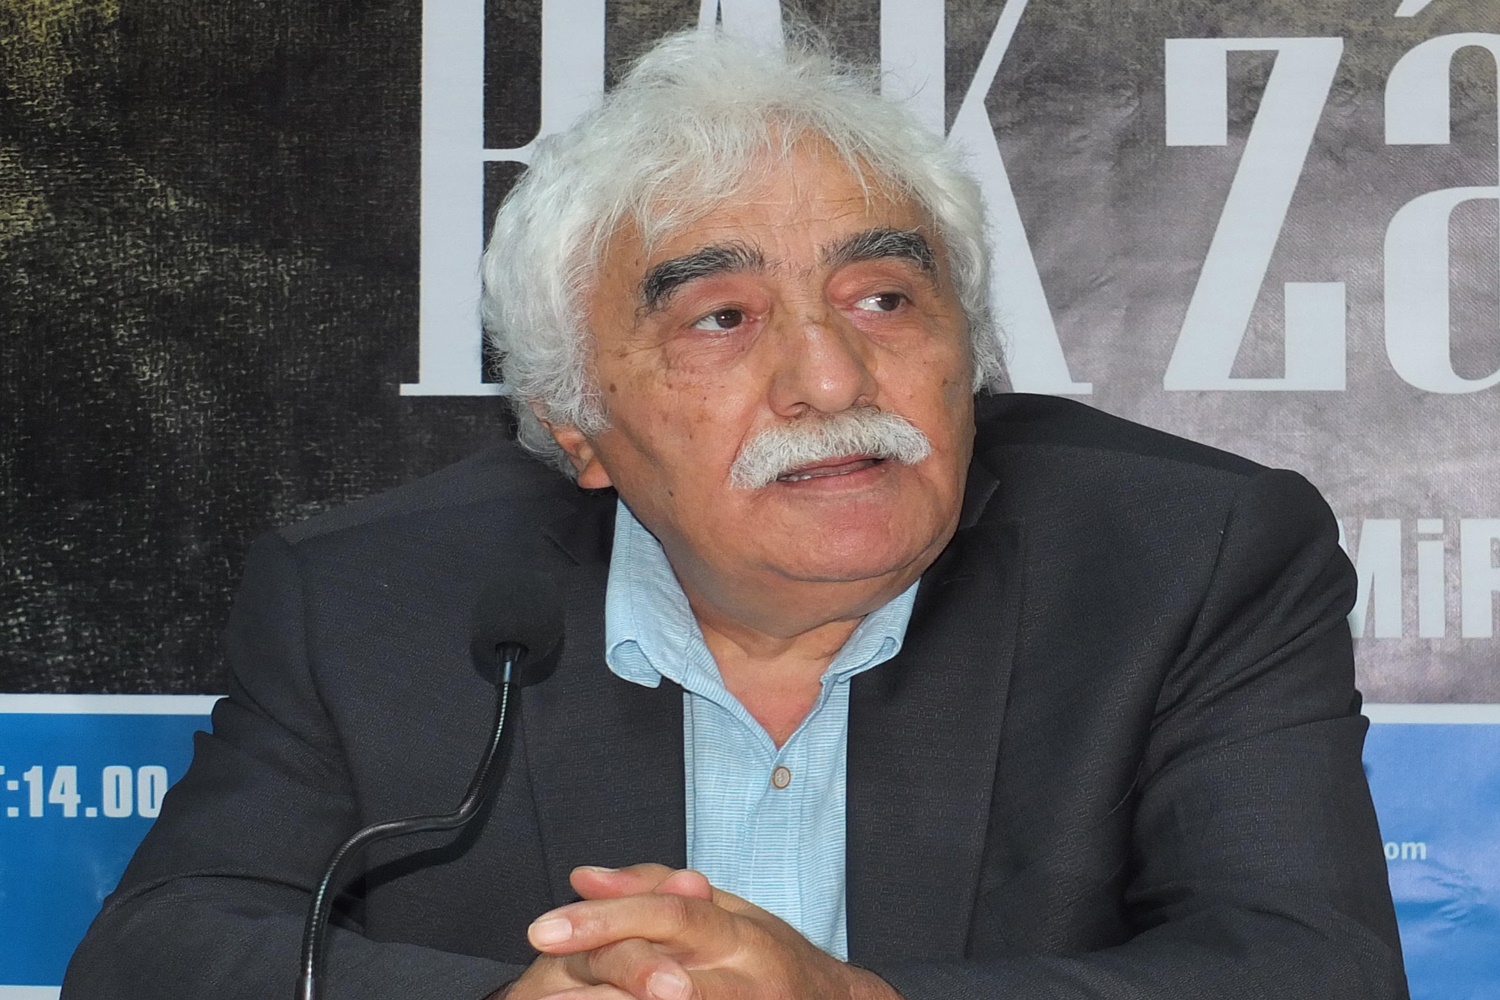 Şair-Yazar Dr. İbrahim Demirci, TYB’nin düzenlediği konferansta Divan şiirimizin son büyük temsilcisi Şeyh Galib’i anlattı